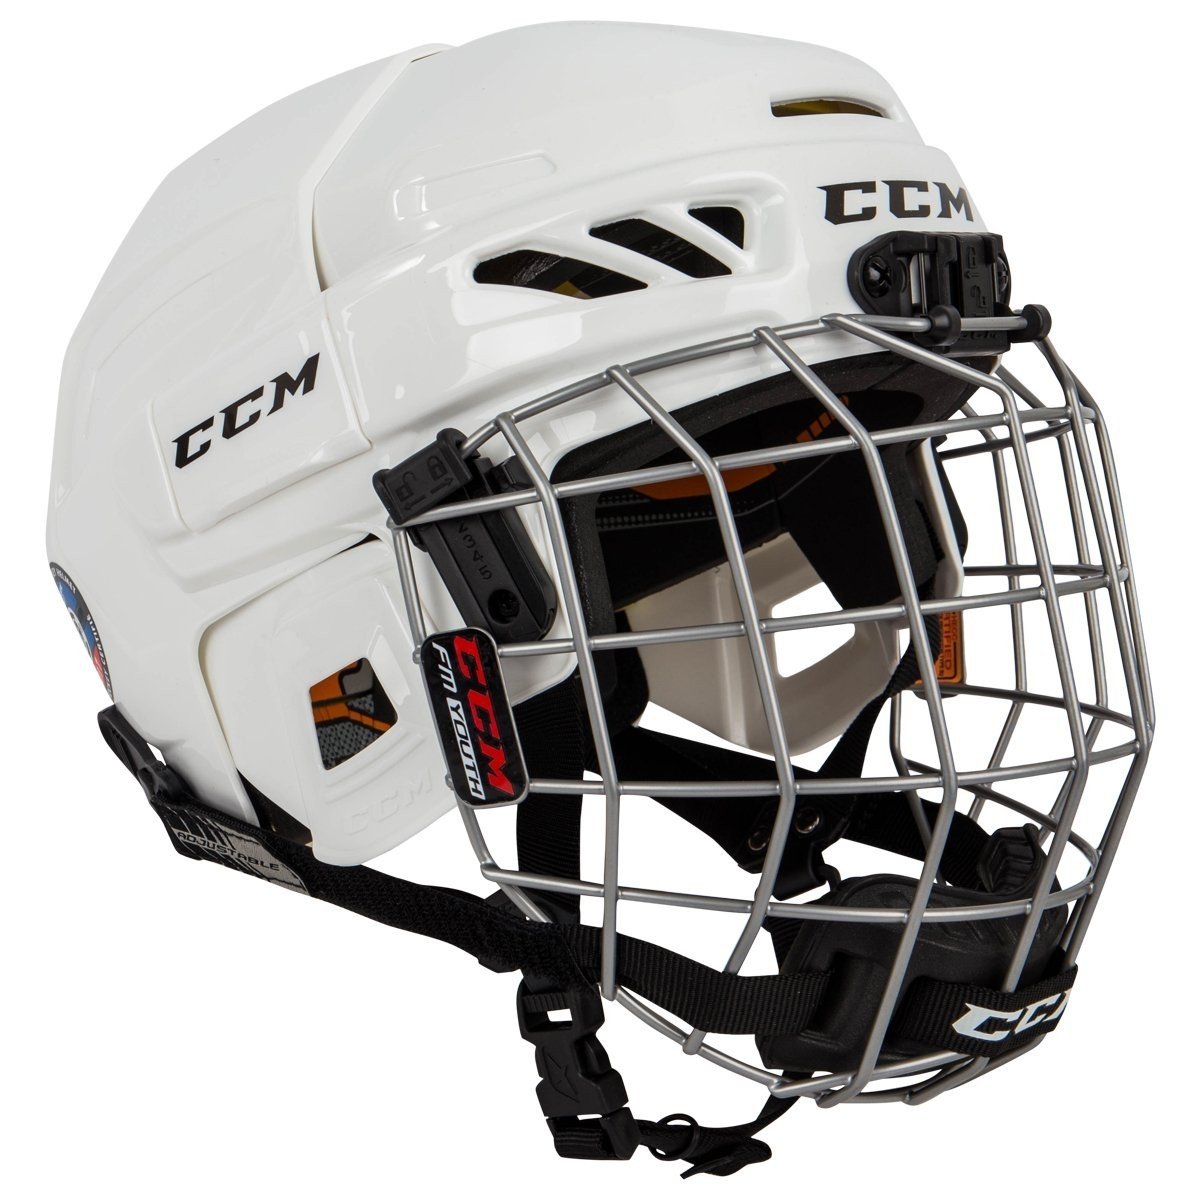 Простая аэрография на хоккейный шлем